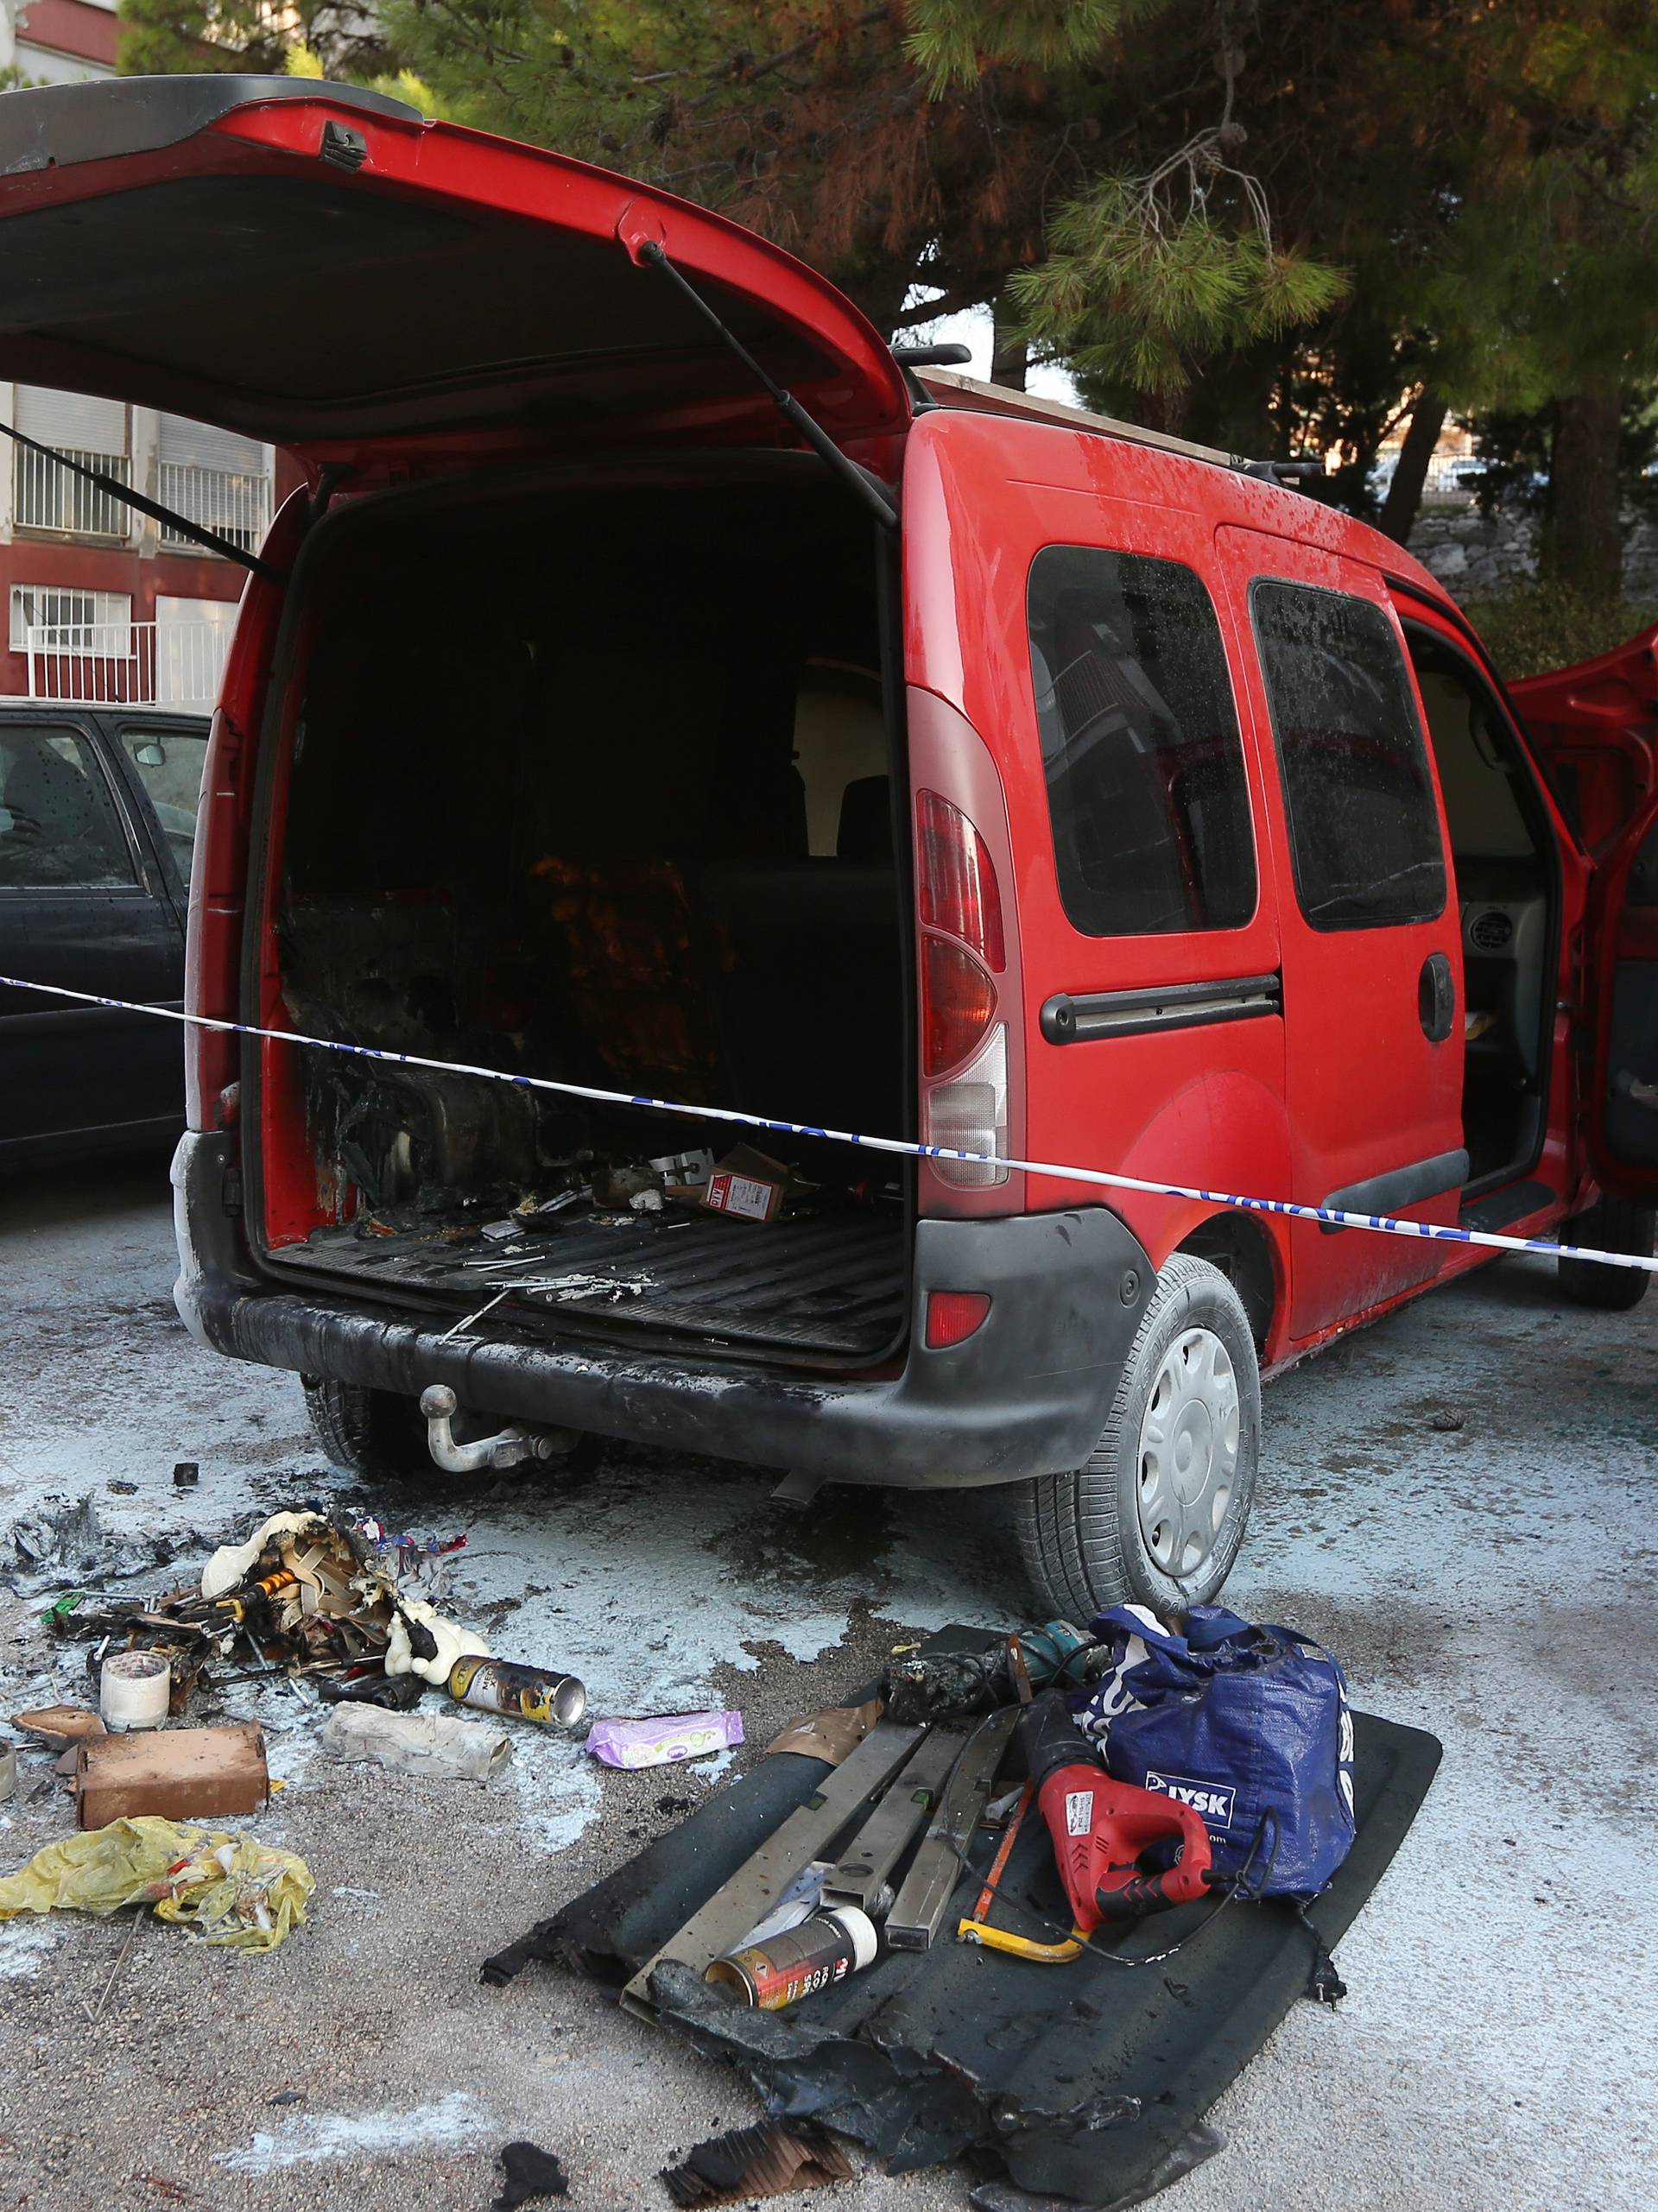 Planuo auto u Šibeniku: 'Prije požara čula se jaka eksplozija'